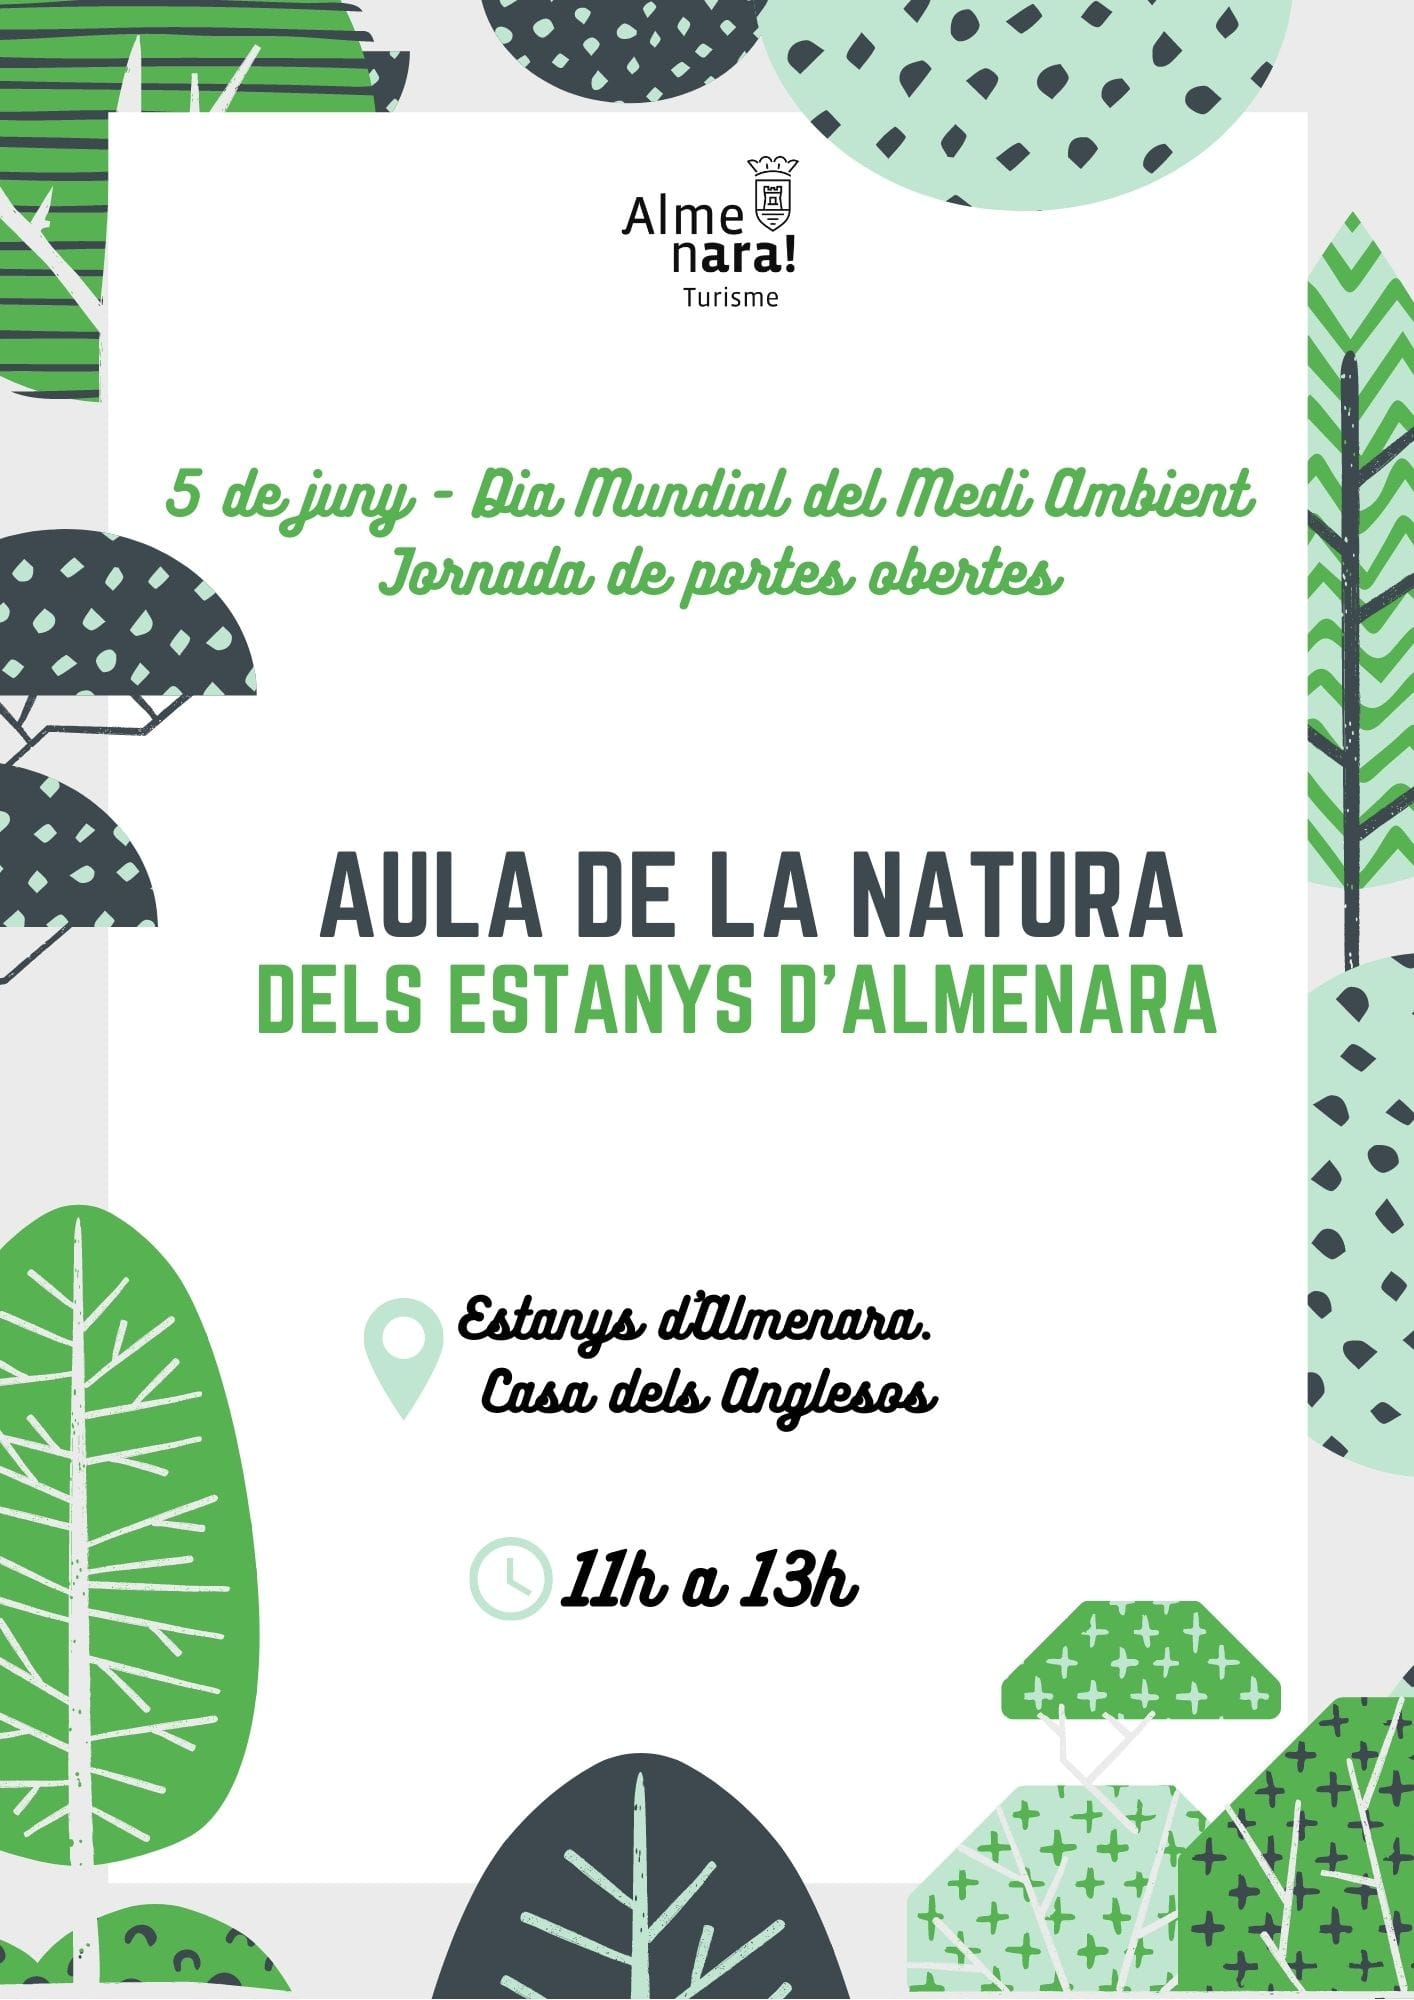 Almenara realizará una jornada de puertas abiertas del Aula de la Natura dels Estanys